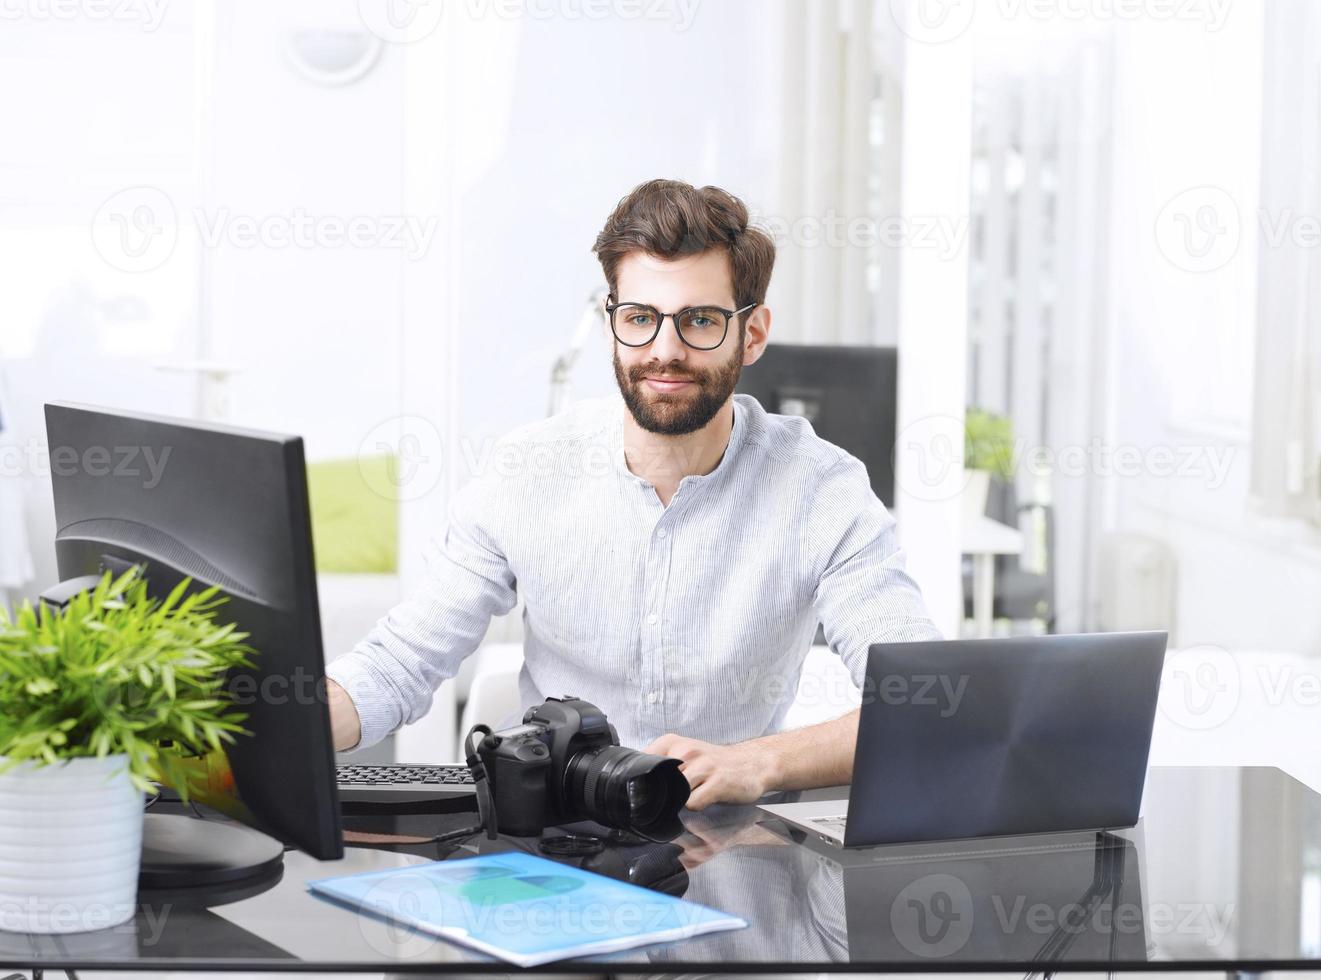 jovem trabalhando no computador foto